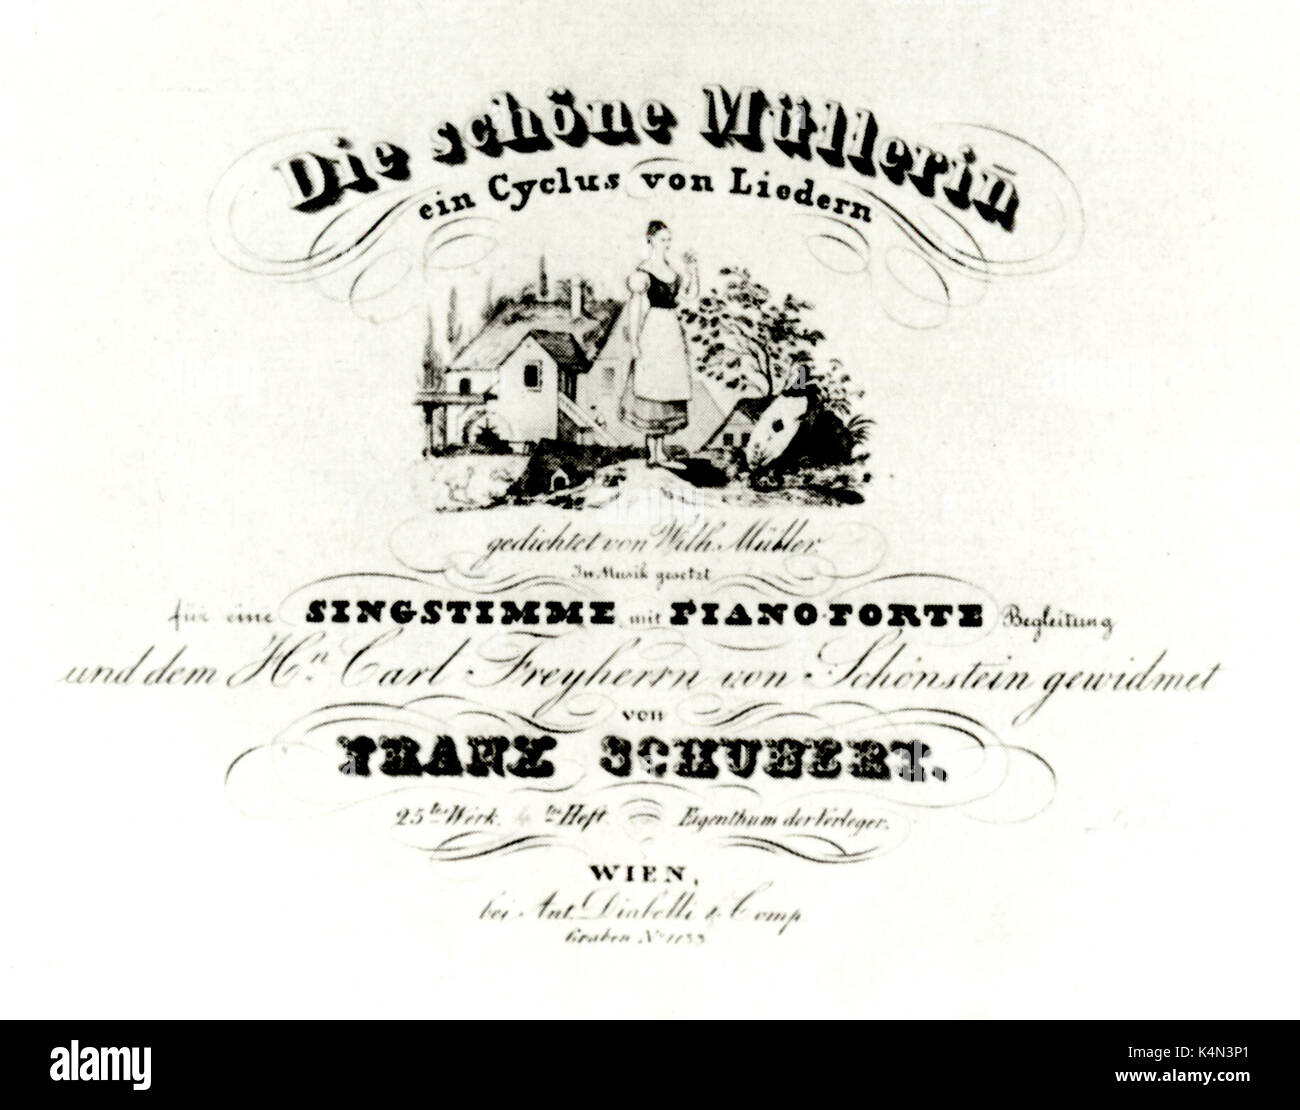 DIE Schöne Müllerin de Schubert - Titlepage de score de son cycle de mélodies. La musique de Schubert, mots par Müller Banque D'Images